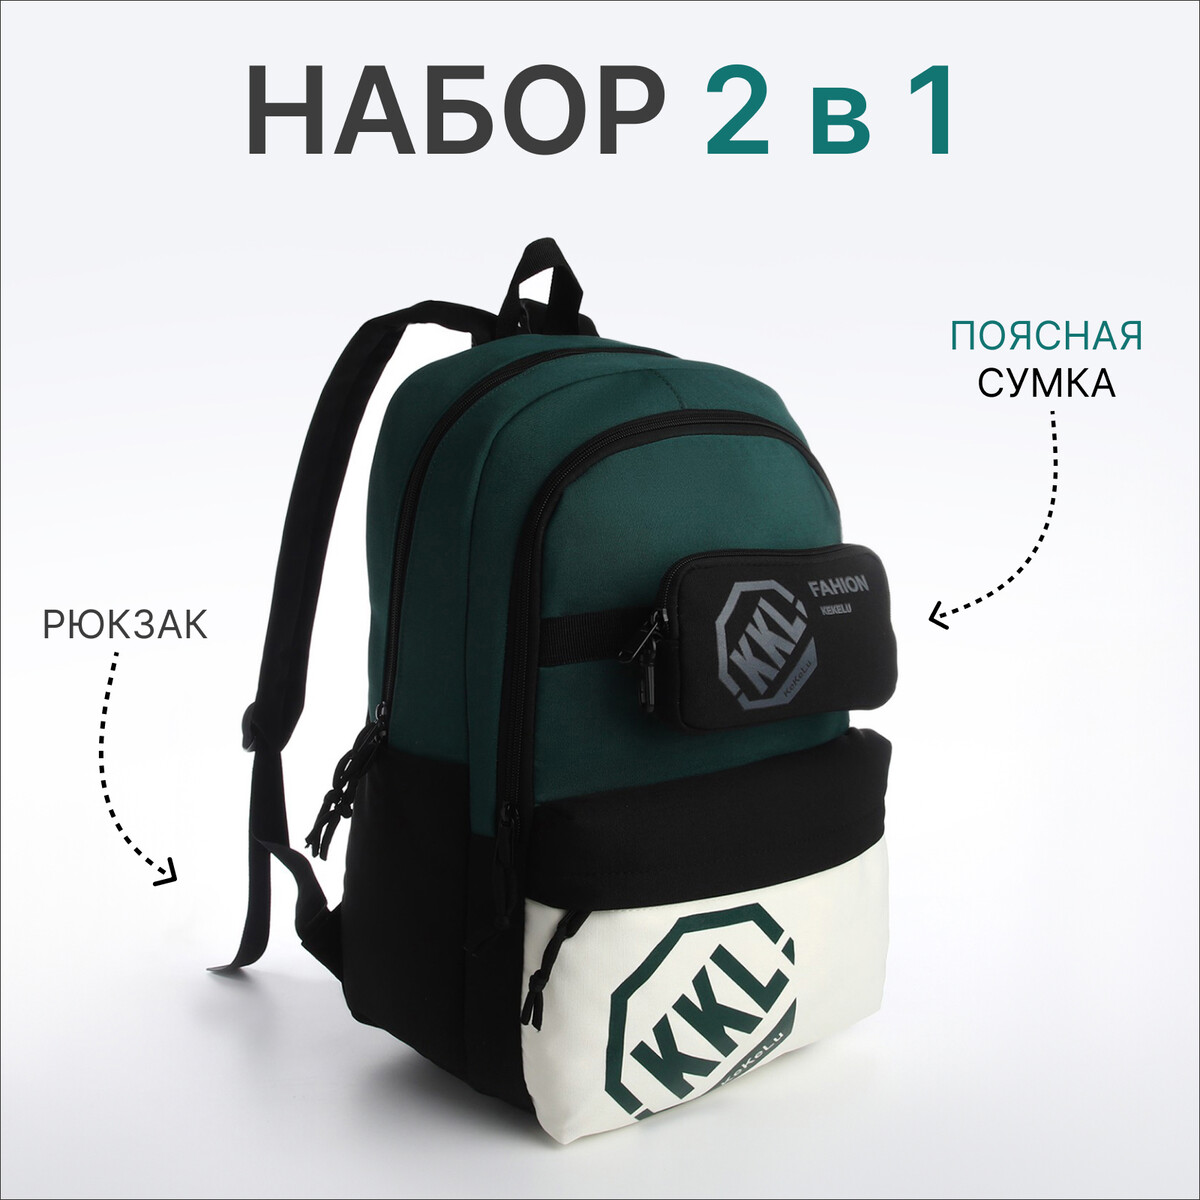 Рюкзак молодежный из текстиля на молнии, 3 кармана, сумка, держатель для чемодана, цвет черный/зеленый рюкзак молодежный из текстиля на молнии 4 кармана зеленый